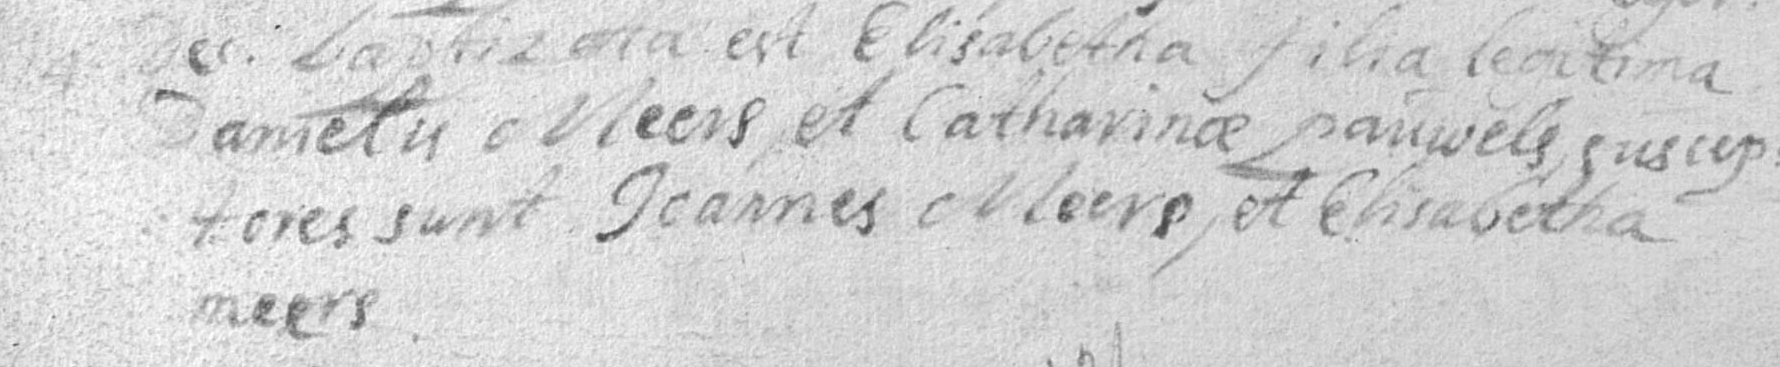 1708-ElisabethMeers14Dec1708DanielisMeersCatharinaPauwels.jpg